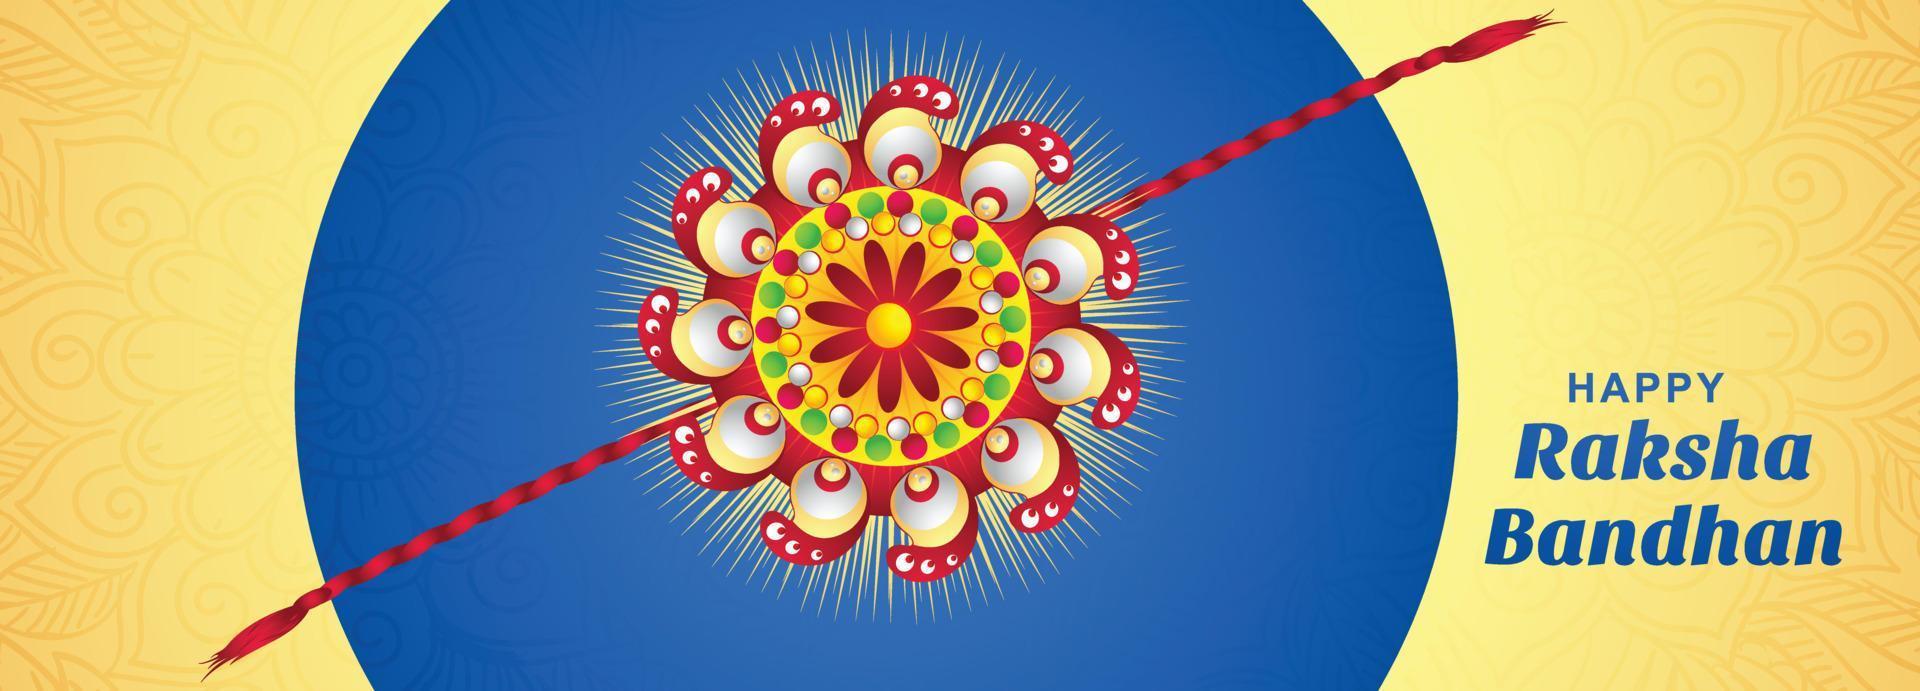 raksha bandhan festival feier karte banner hintergrund vektor